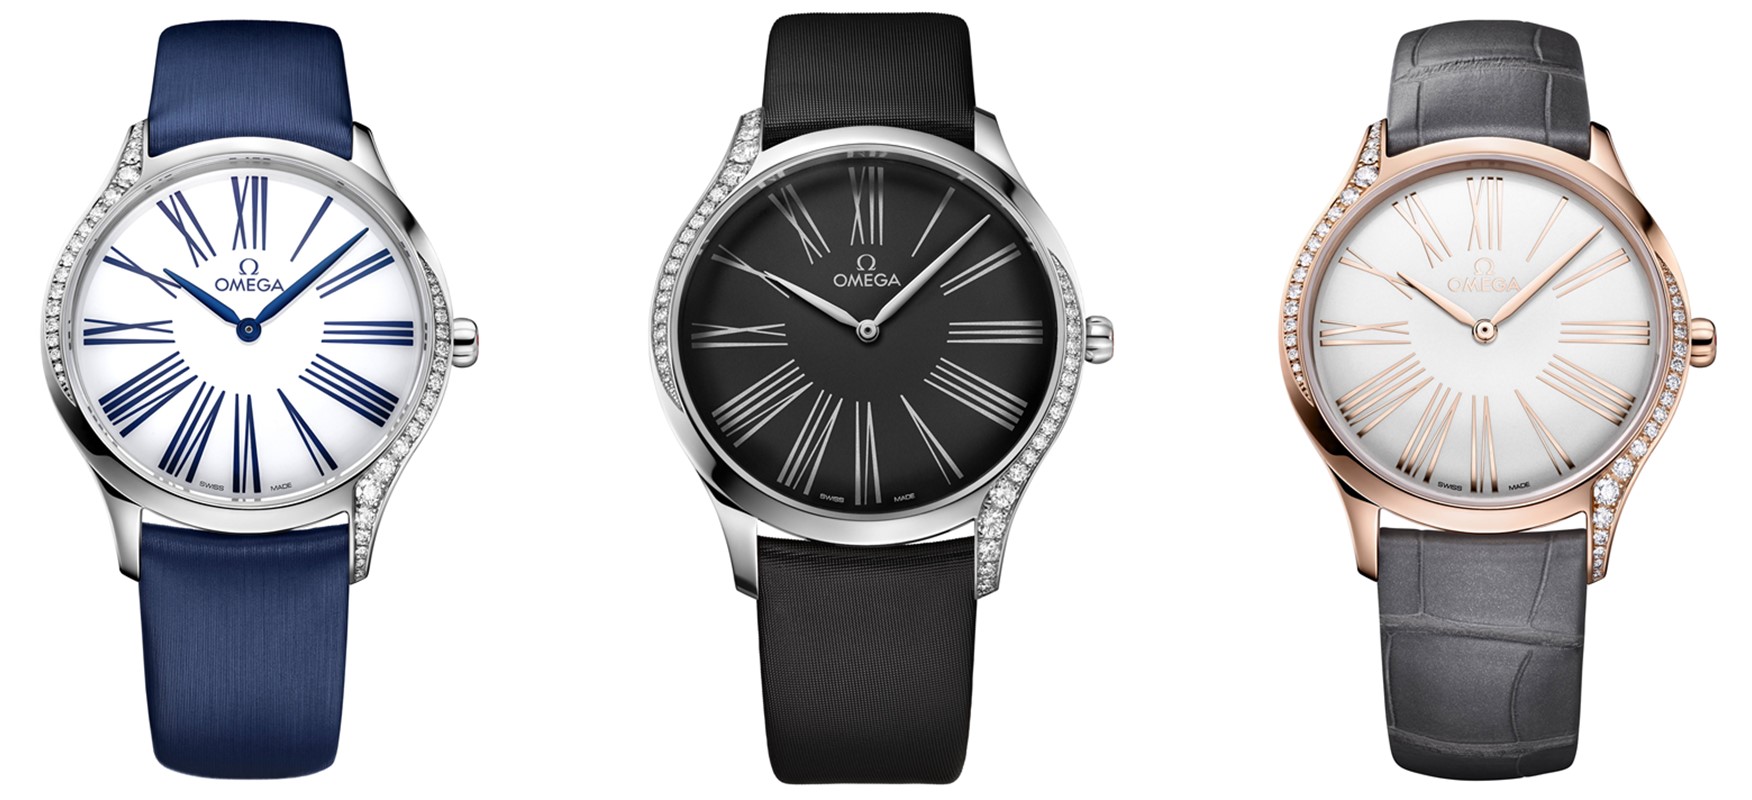 Omega przedstawia nową kolekcję zegarków dla kobiet Trésor